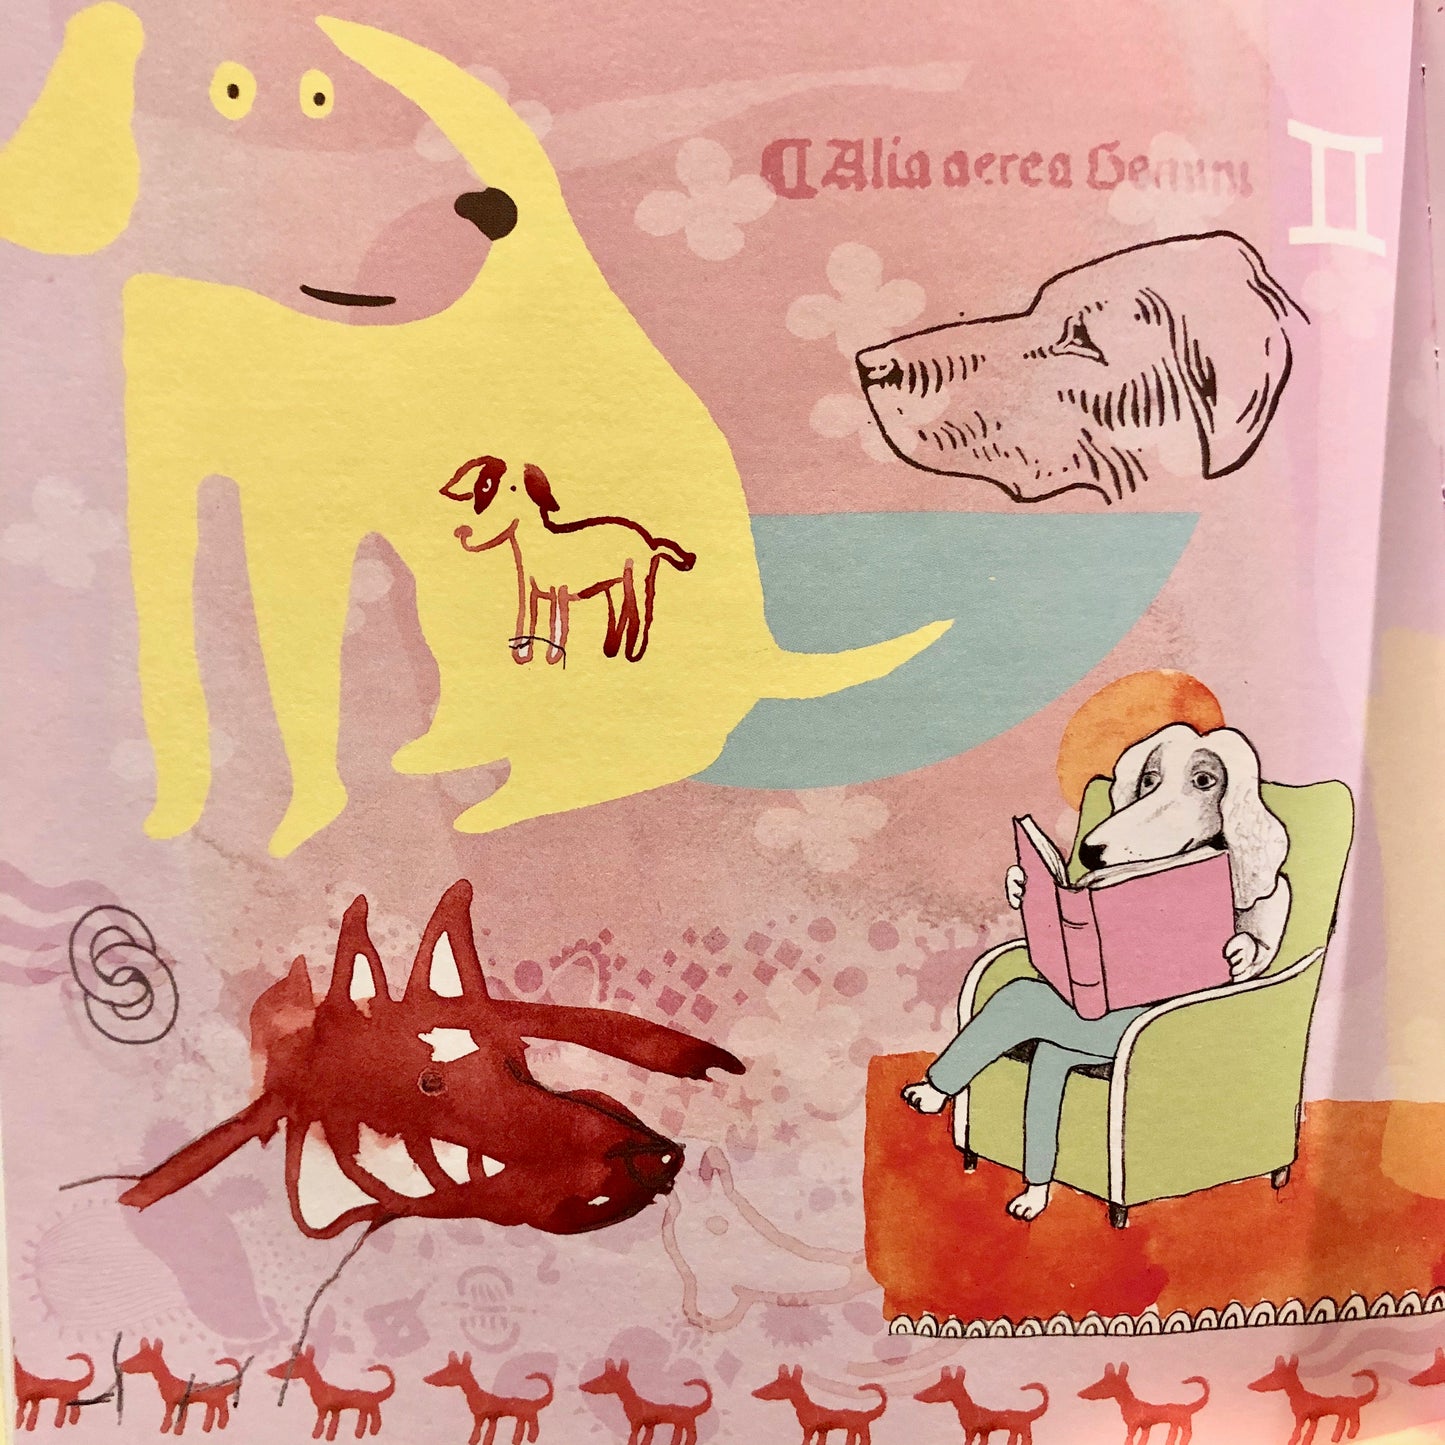 Astrodogs -  En Astrologibok för hundälskare (An astrology book for dog lovers in Swedish)